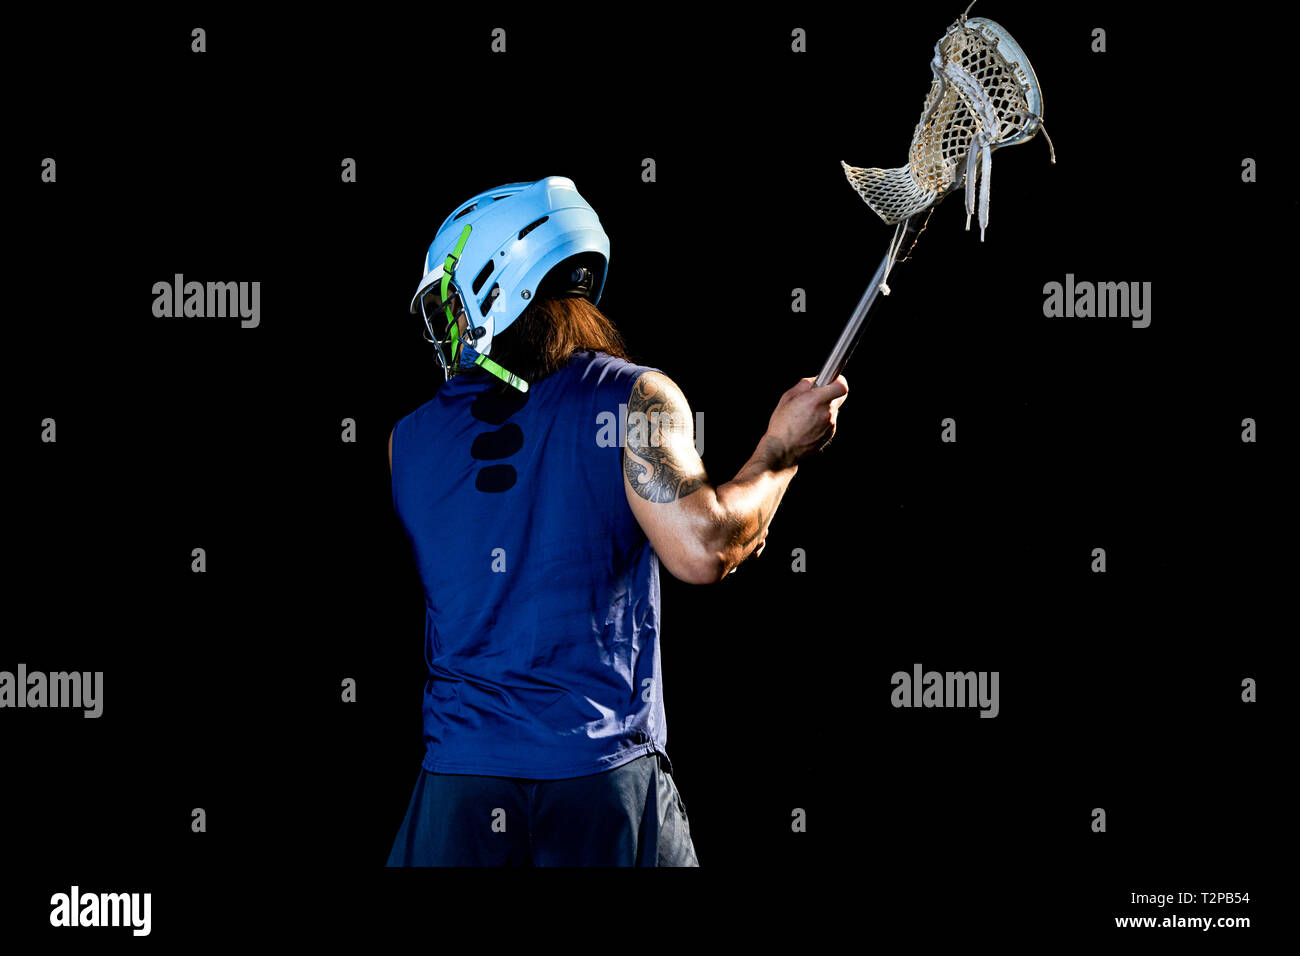 Ritratto di lacrosse player, sfondo nero Foto Stock